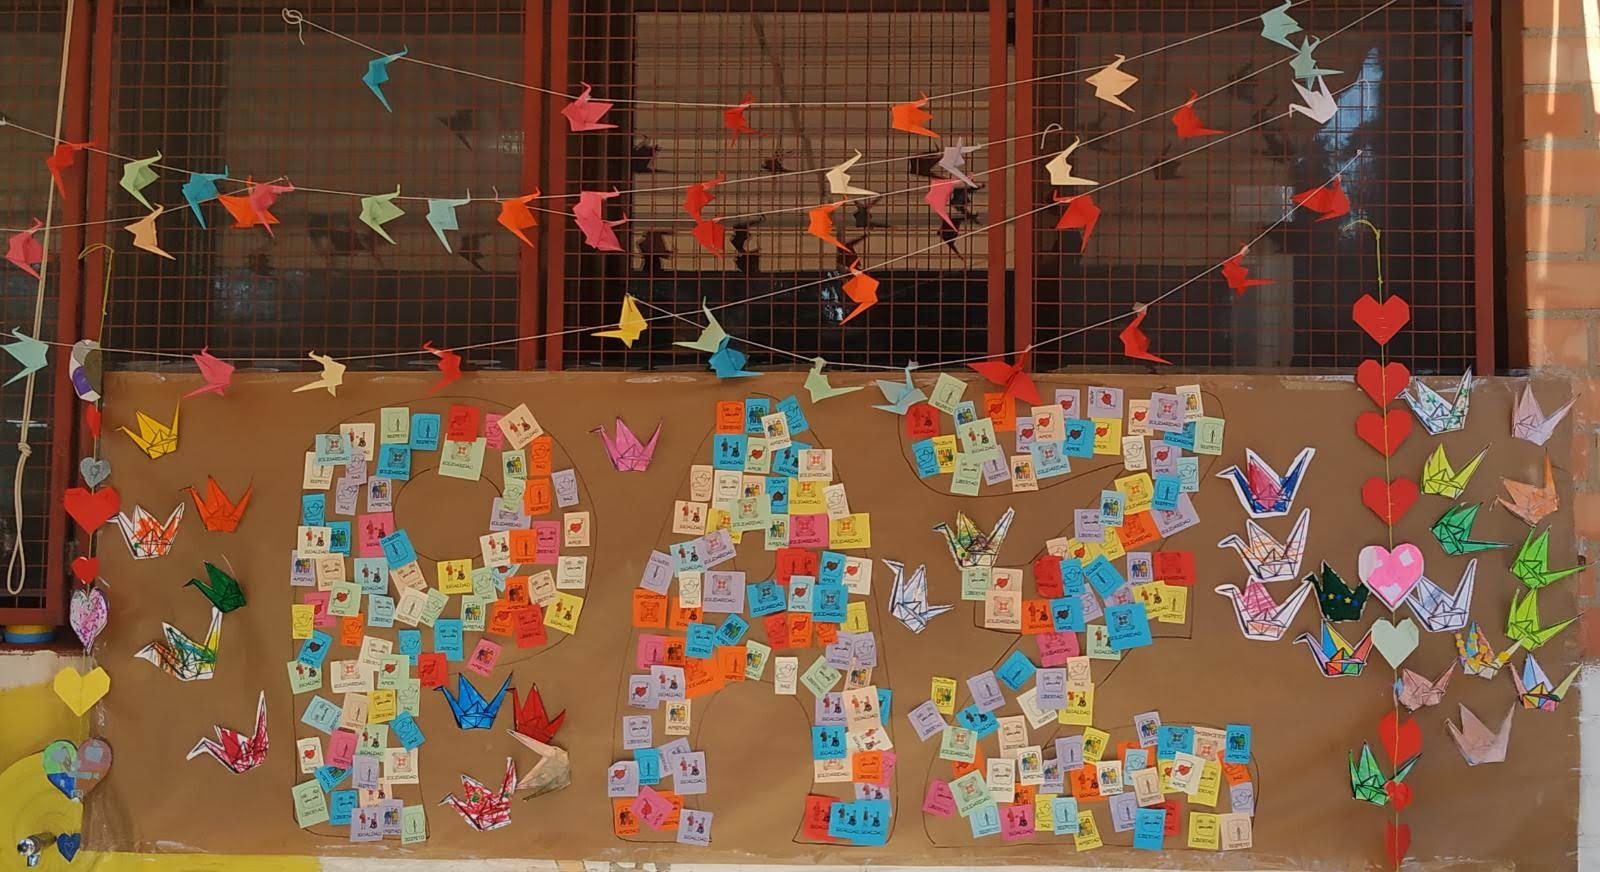 Fotofrafía del mural de la paz que que incluye papeles con mensajes y grullas de origami